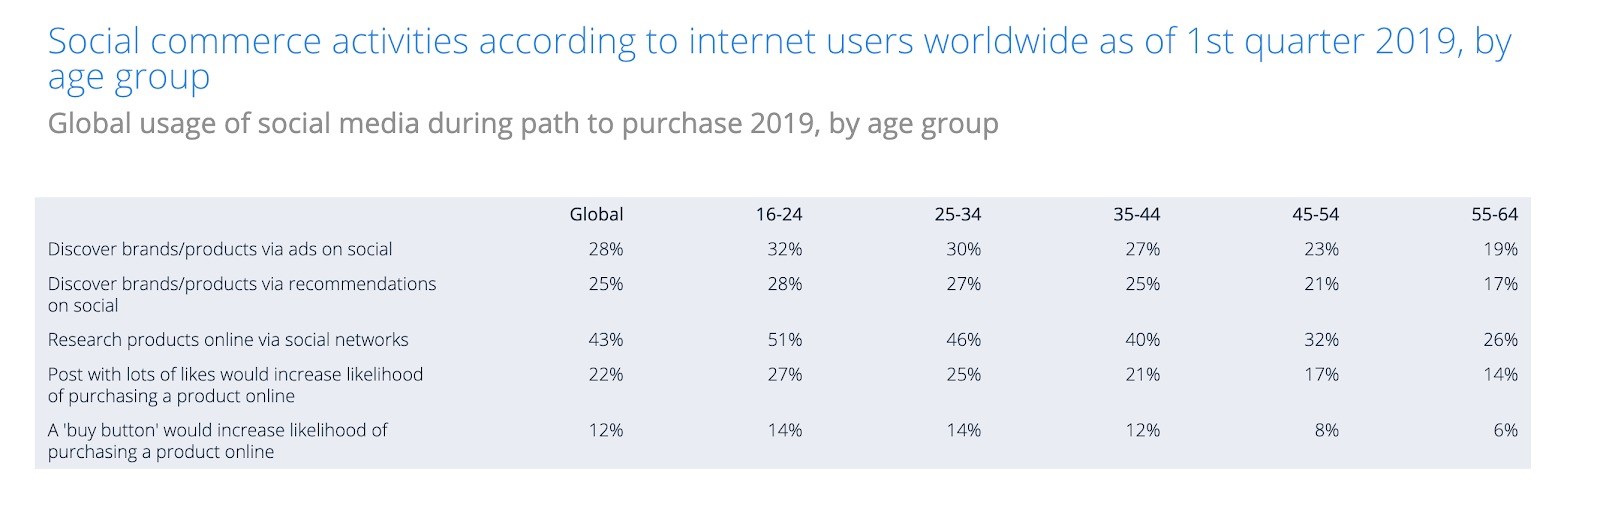 آمار جهانی خرید و فروش آنلاین